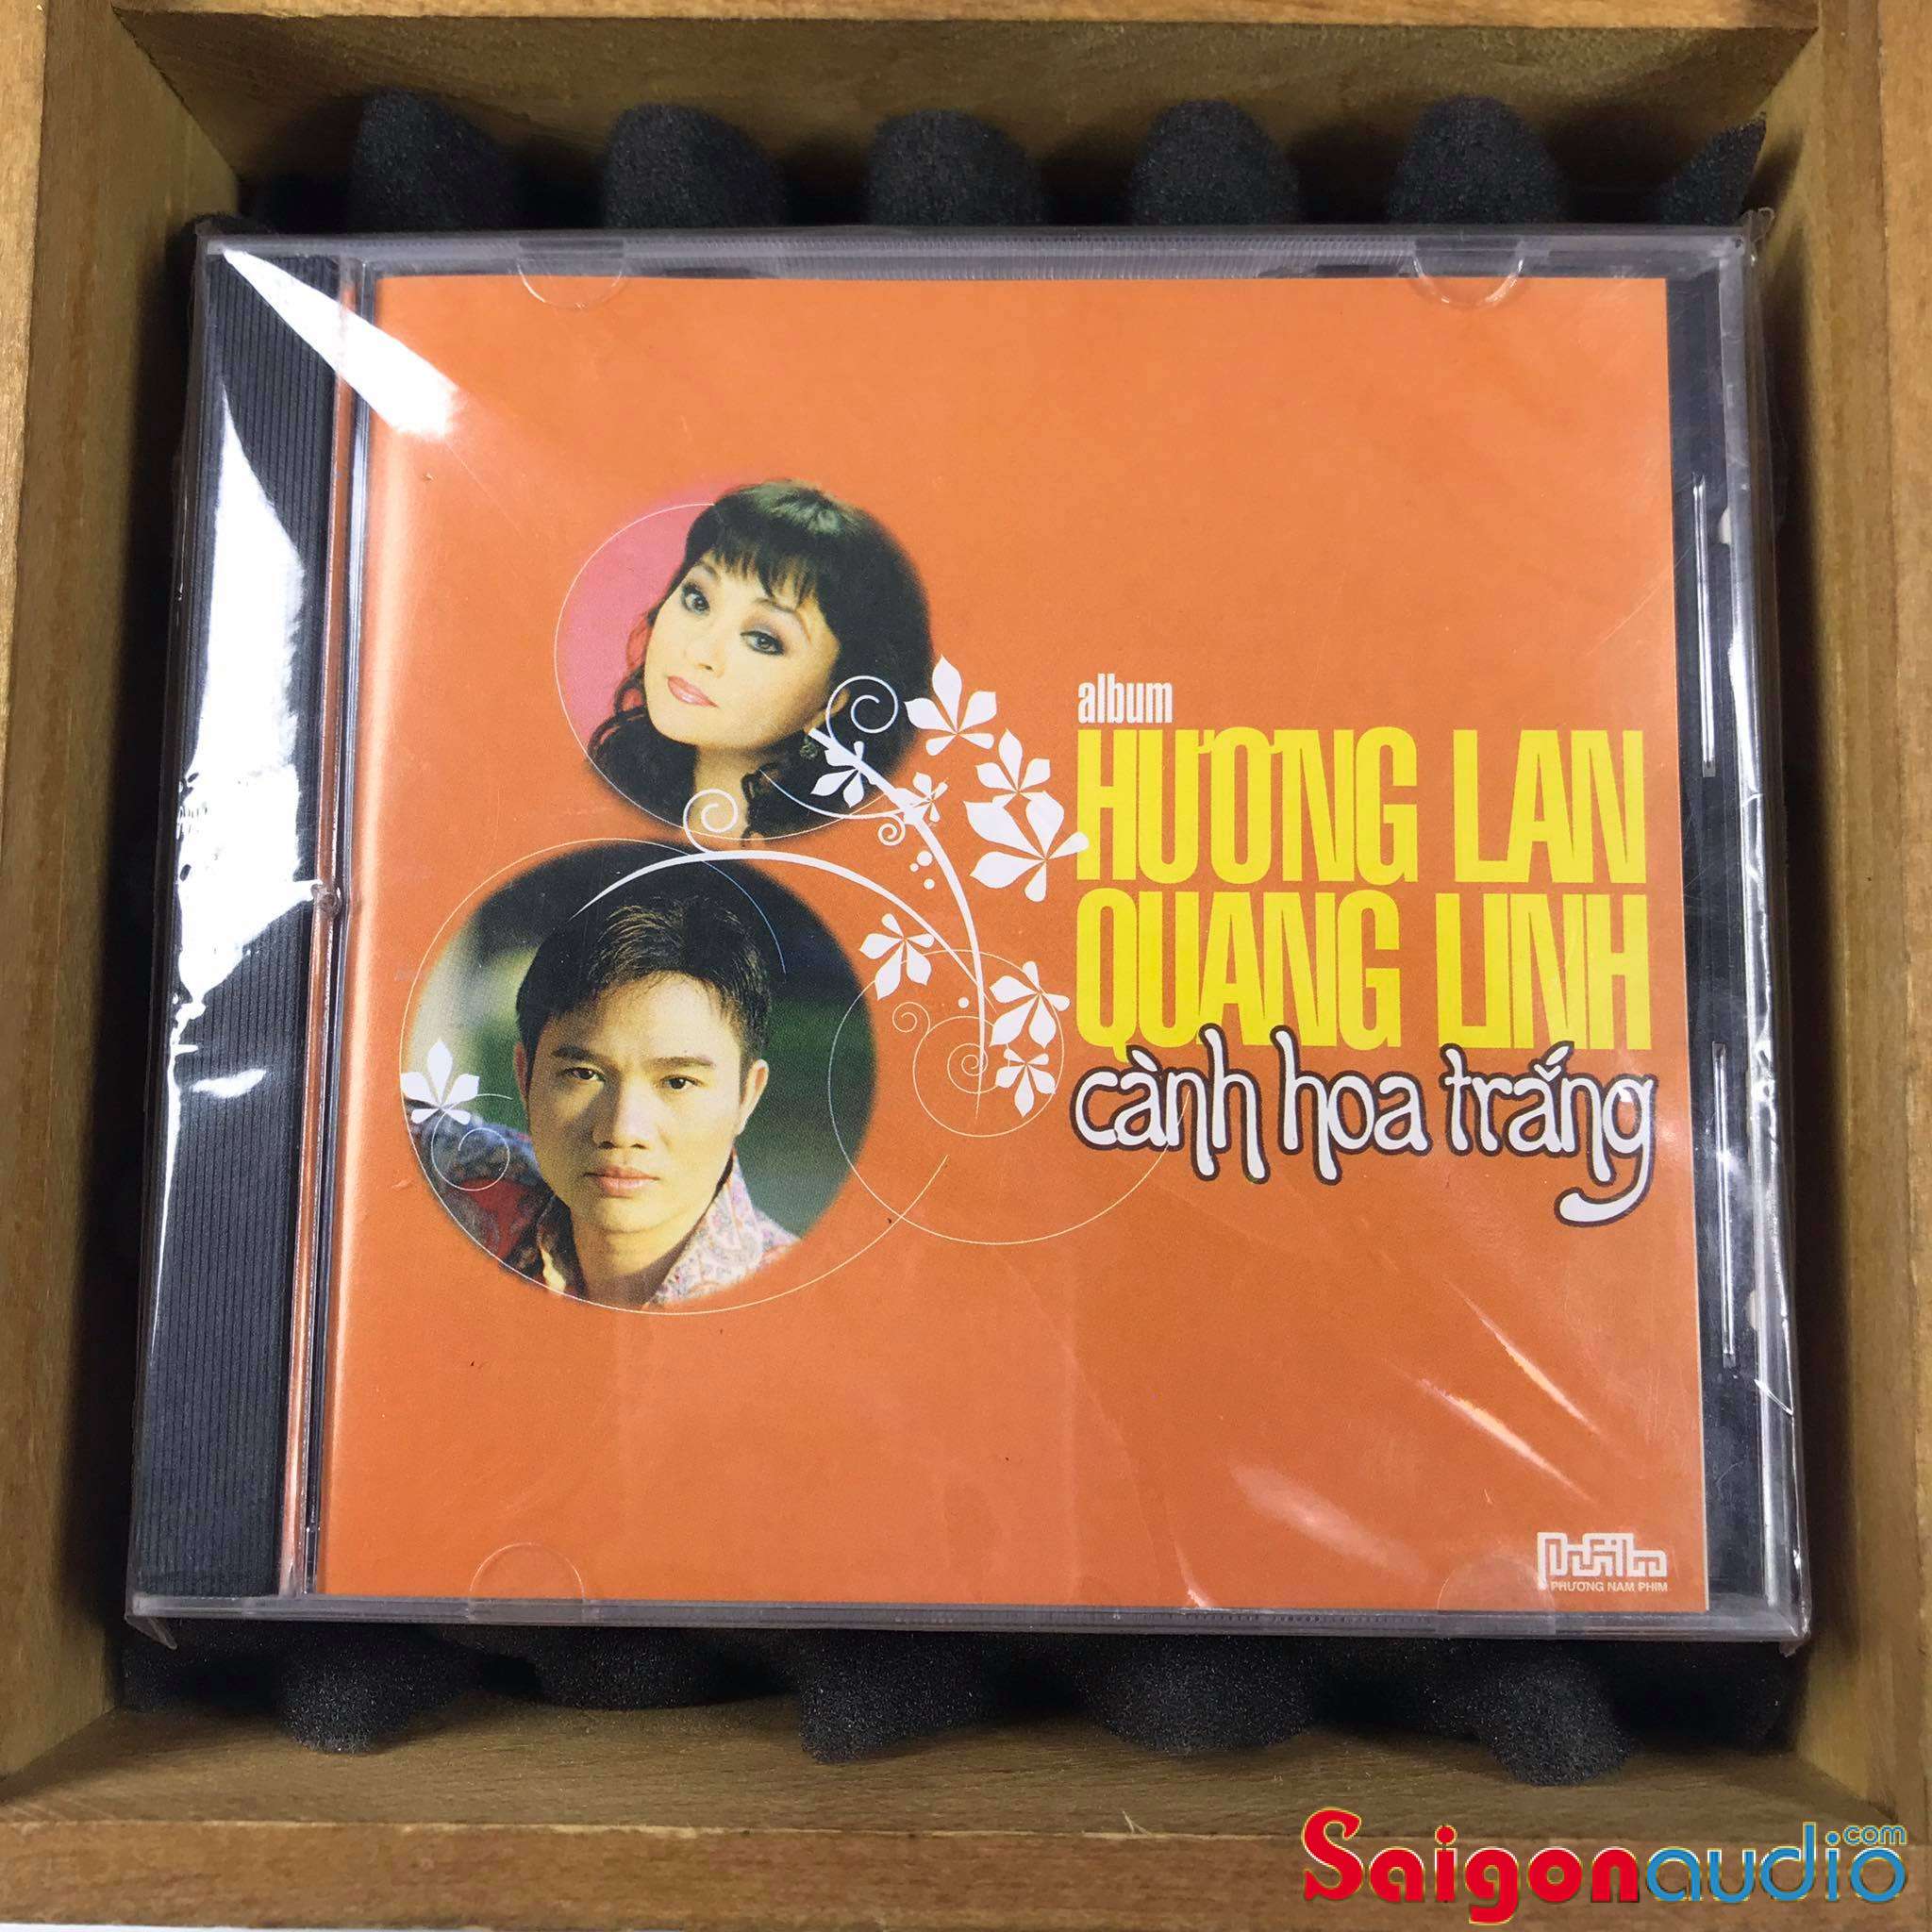 Đĩa CD nhạc gốc Hương Lan - Quang Linh - Cành Hoa Trắng (Free ship khi mua 2 đĩa CD cùng hoặc khác loại)